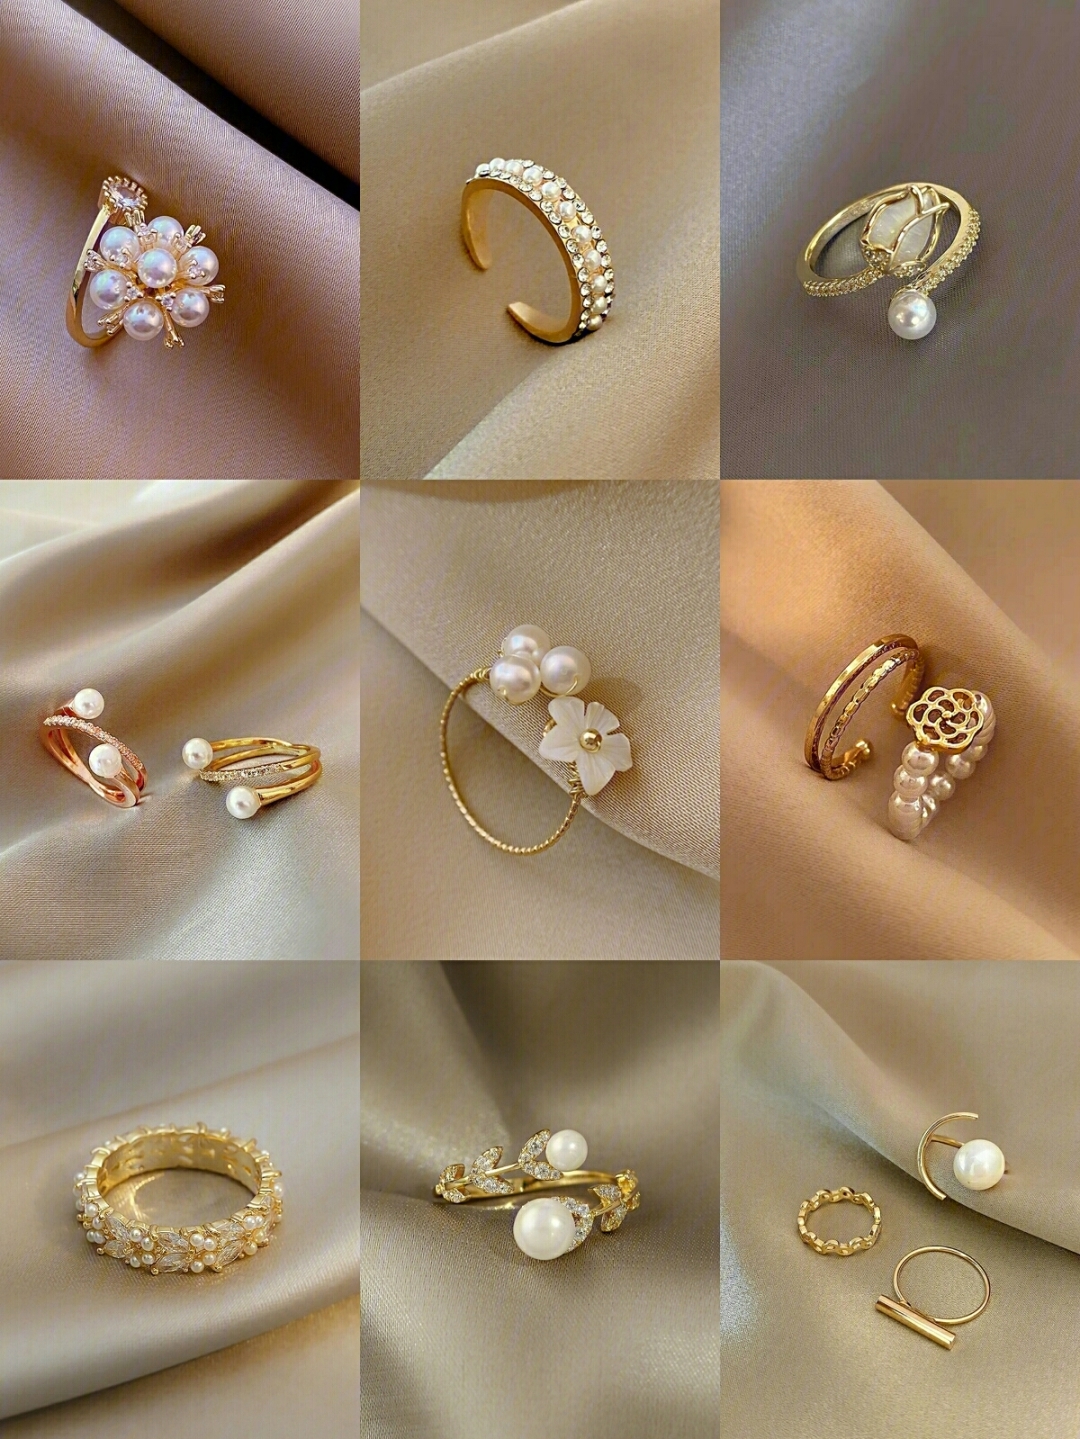 超绝的珍珠戒指简约大方的设计爱惨了